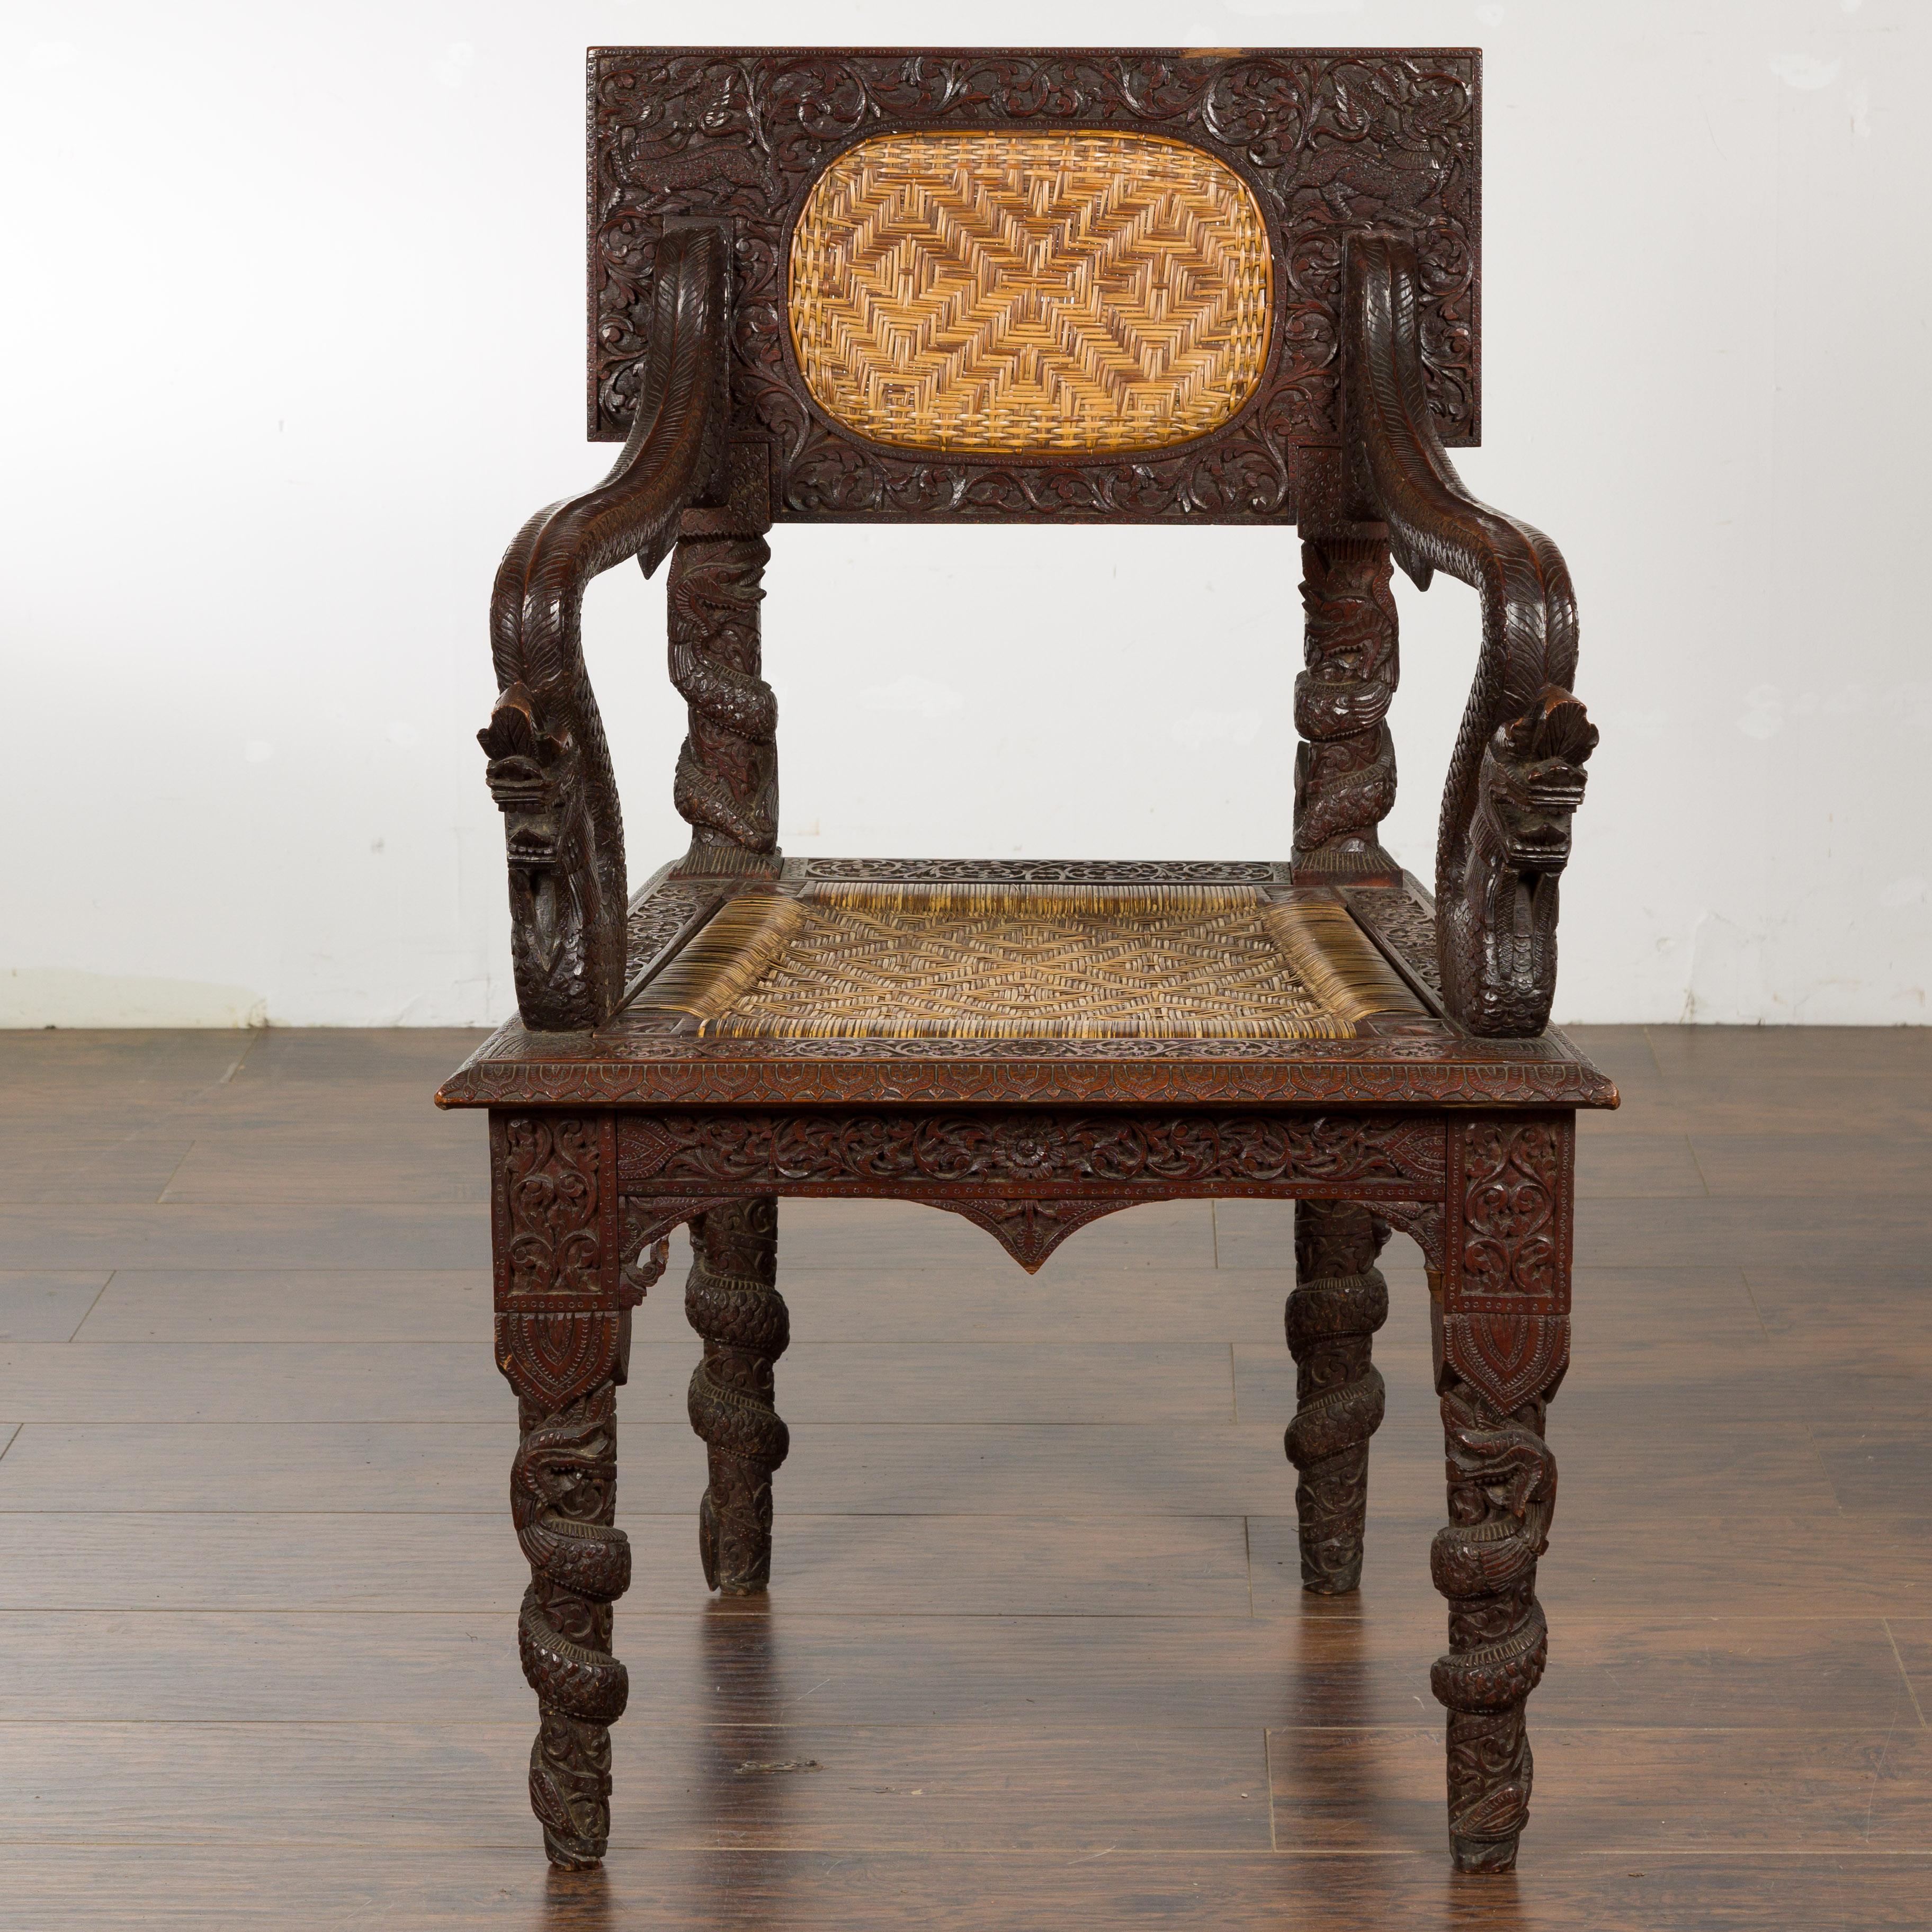 Fauteuil anglo-indien en bois sculpté datant d'environ 1900, avec dossier sculpté et créatures mythiques sur les accoudoirs. Ce magnifique fauteuil anglo-indien en bois sculpté, datant d'environ 1900, est un mélange saisissant d'artisanat complexe